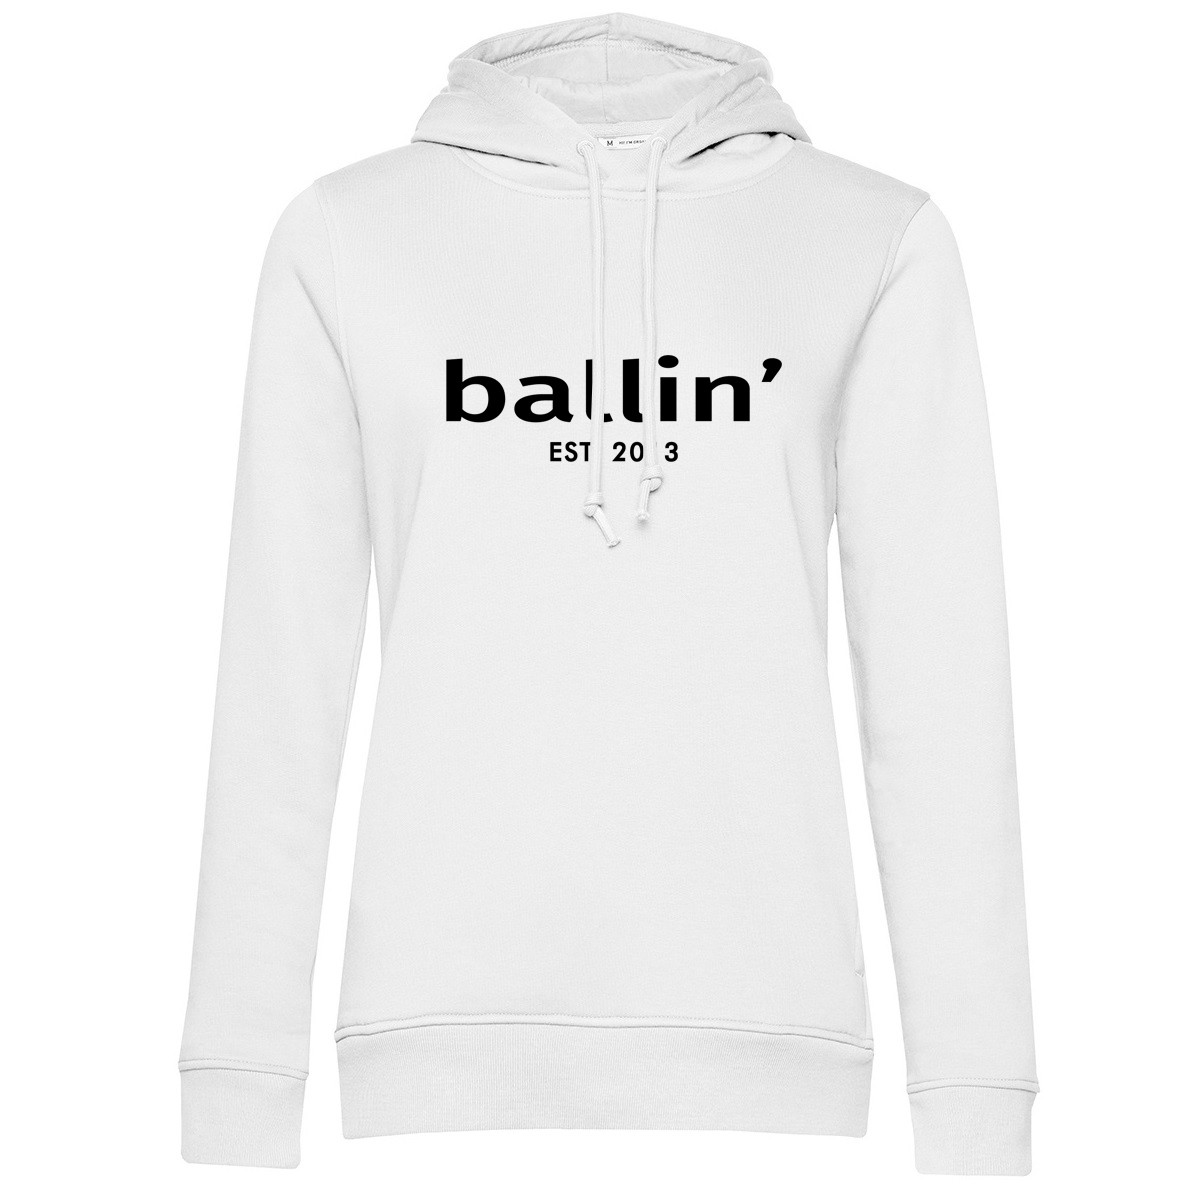 Afbeelding van Ballin Est. 2013 Wmn hoodie